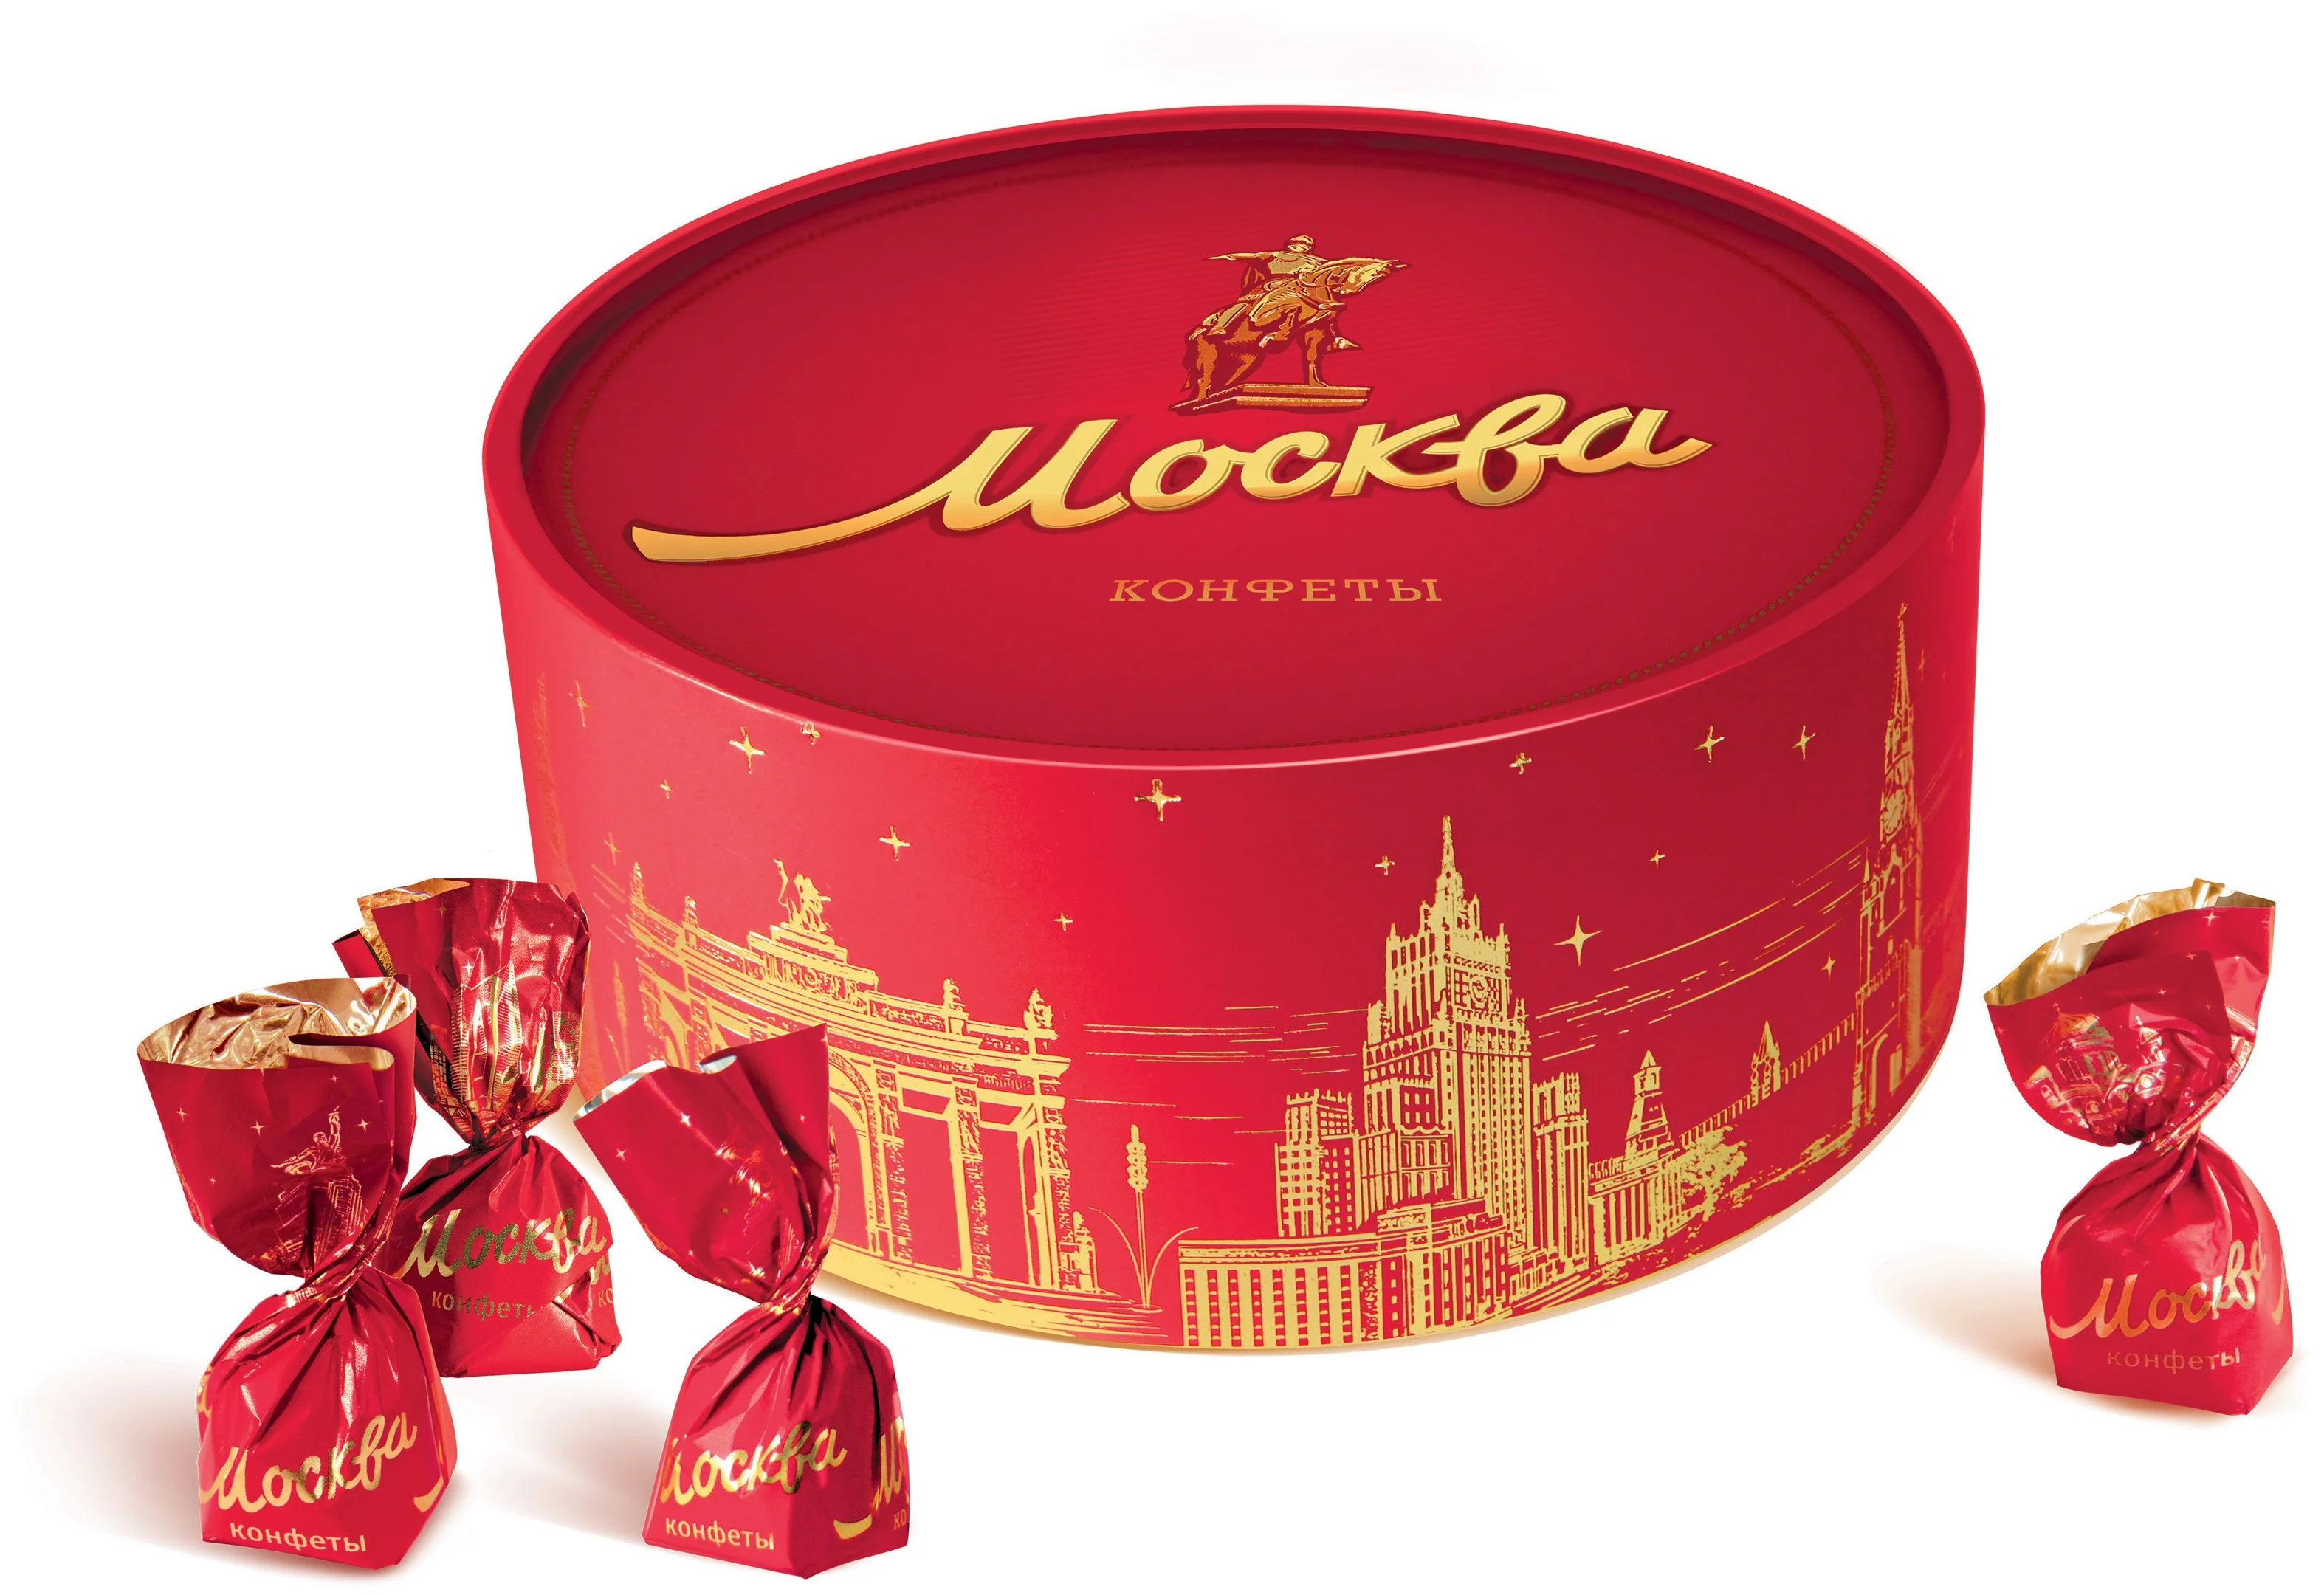 Красный Октябрь Москва 200 г - вид конфет: суфле